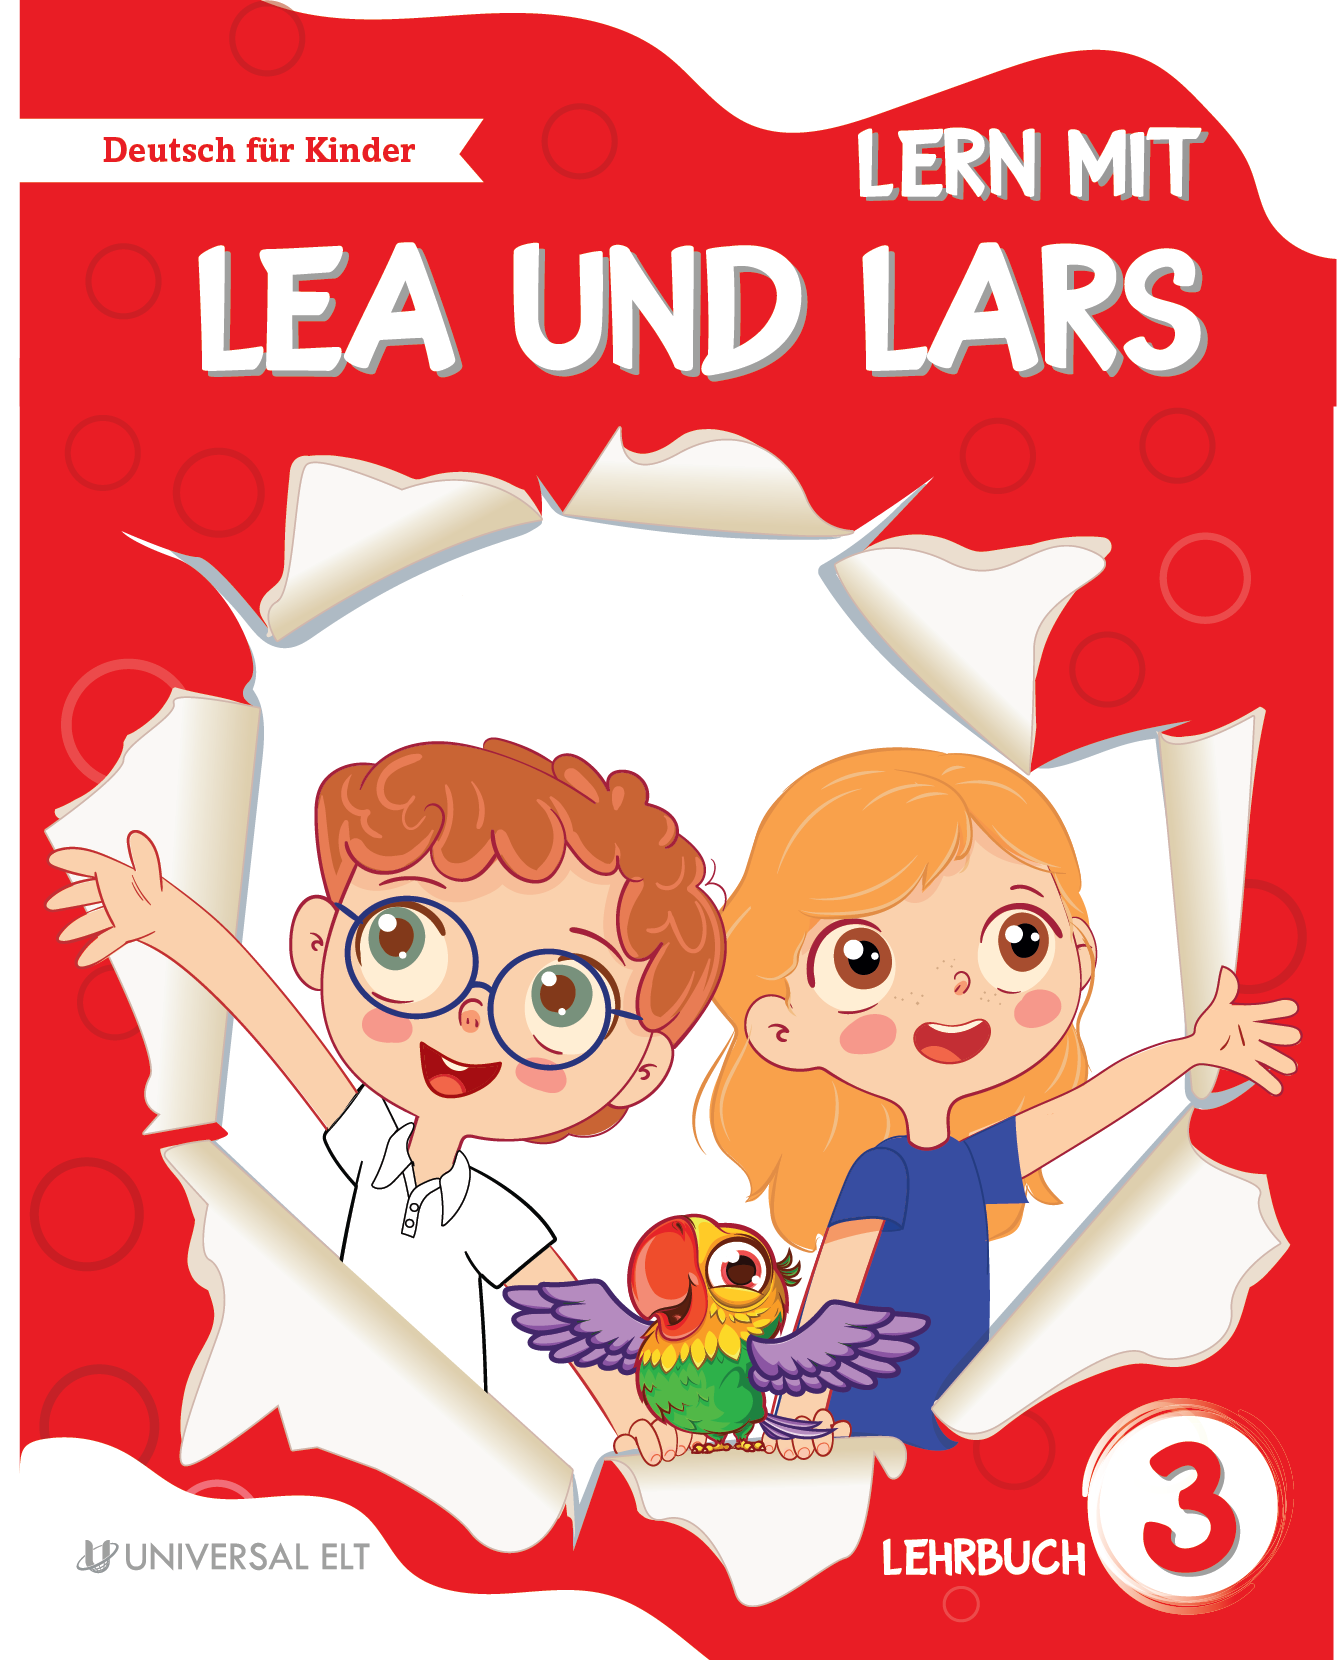 Lern mit! Lea und Lars 3 Lehrbuch